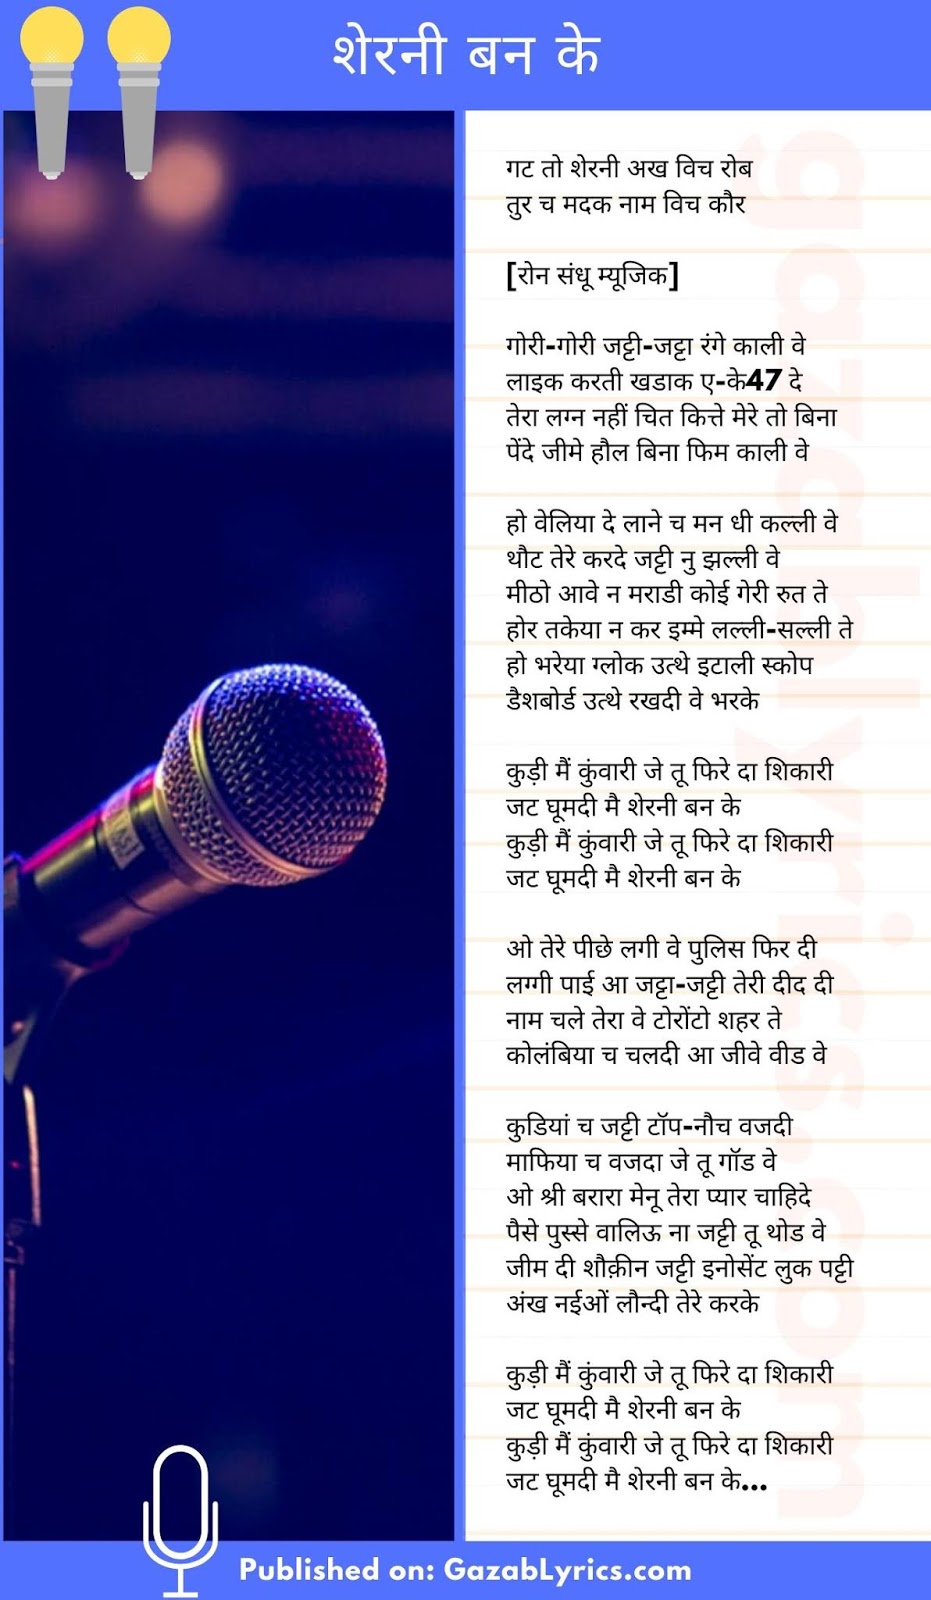 Sherni Ban Ke song lyrics image